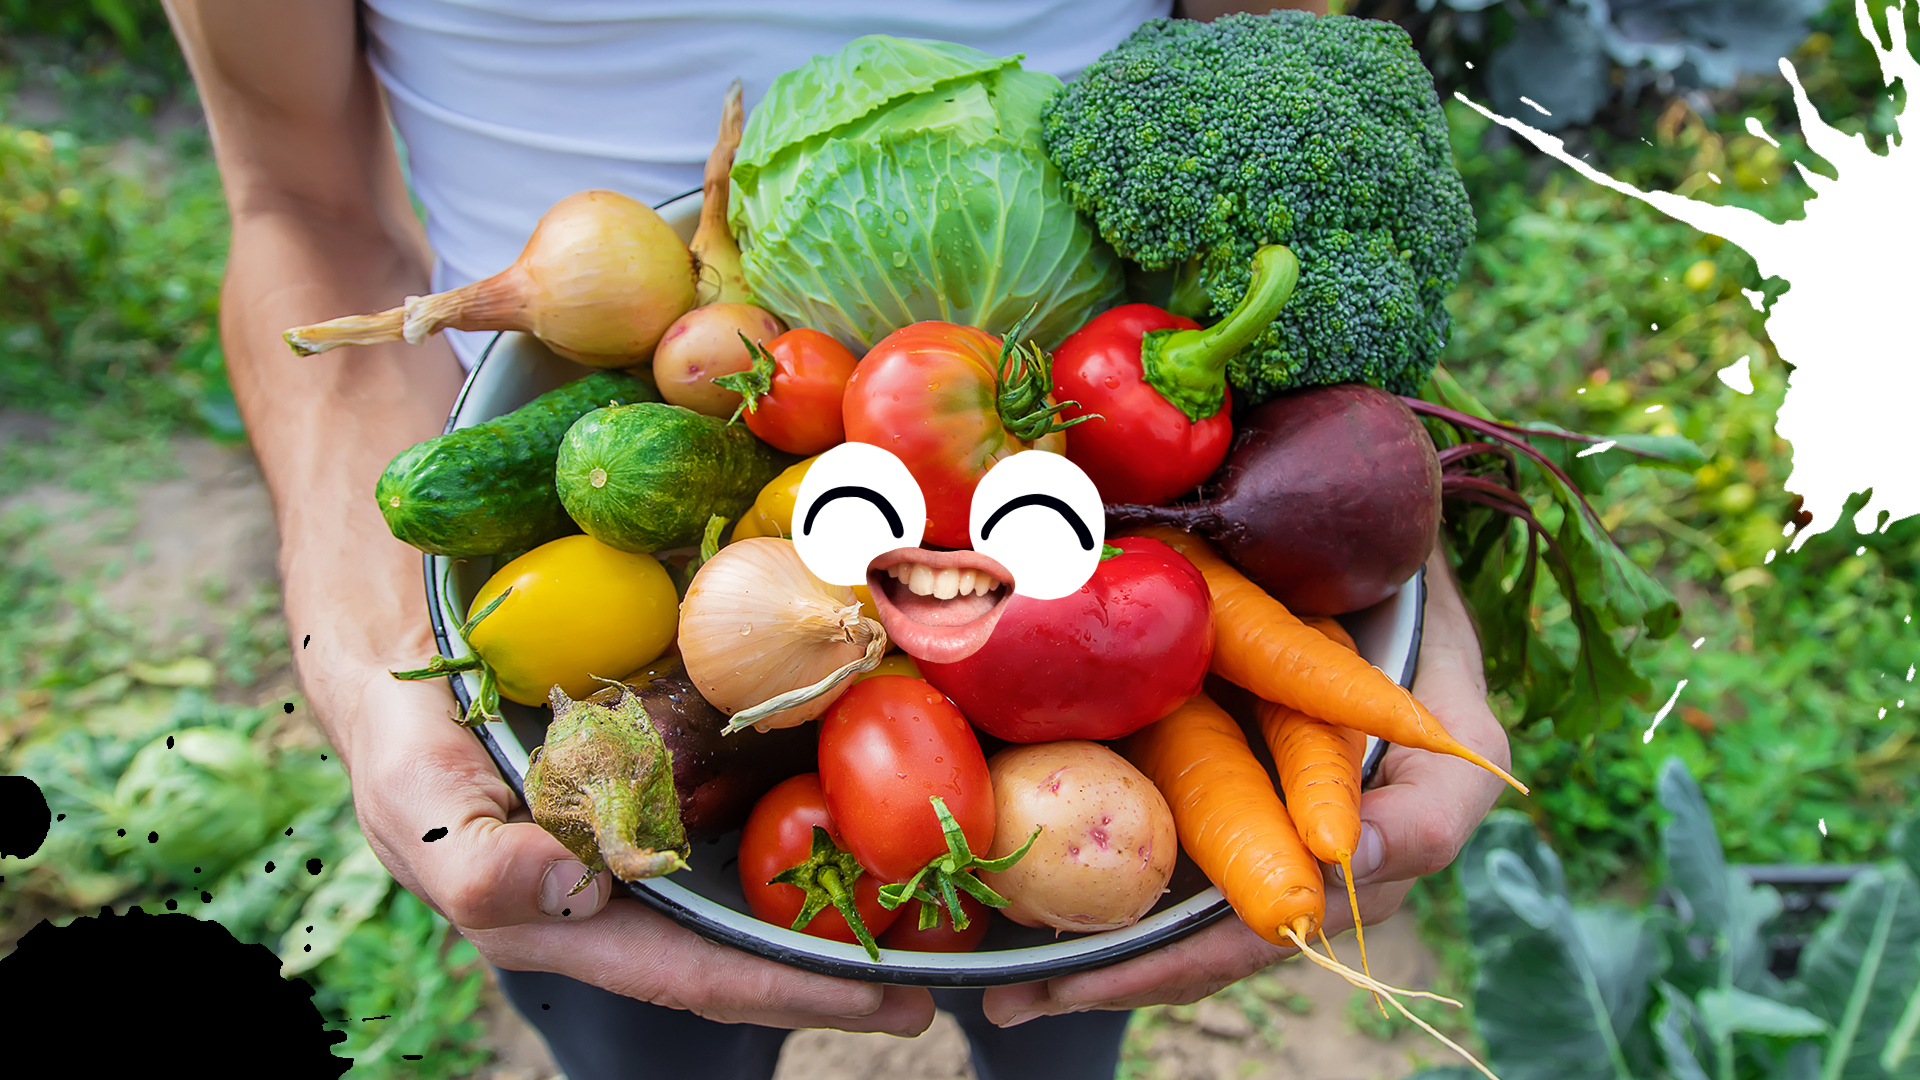 A big harvest of fresh vegetables